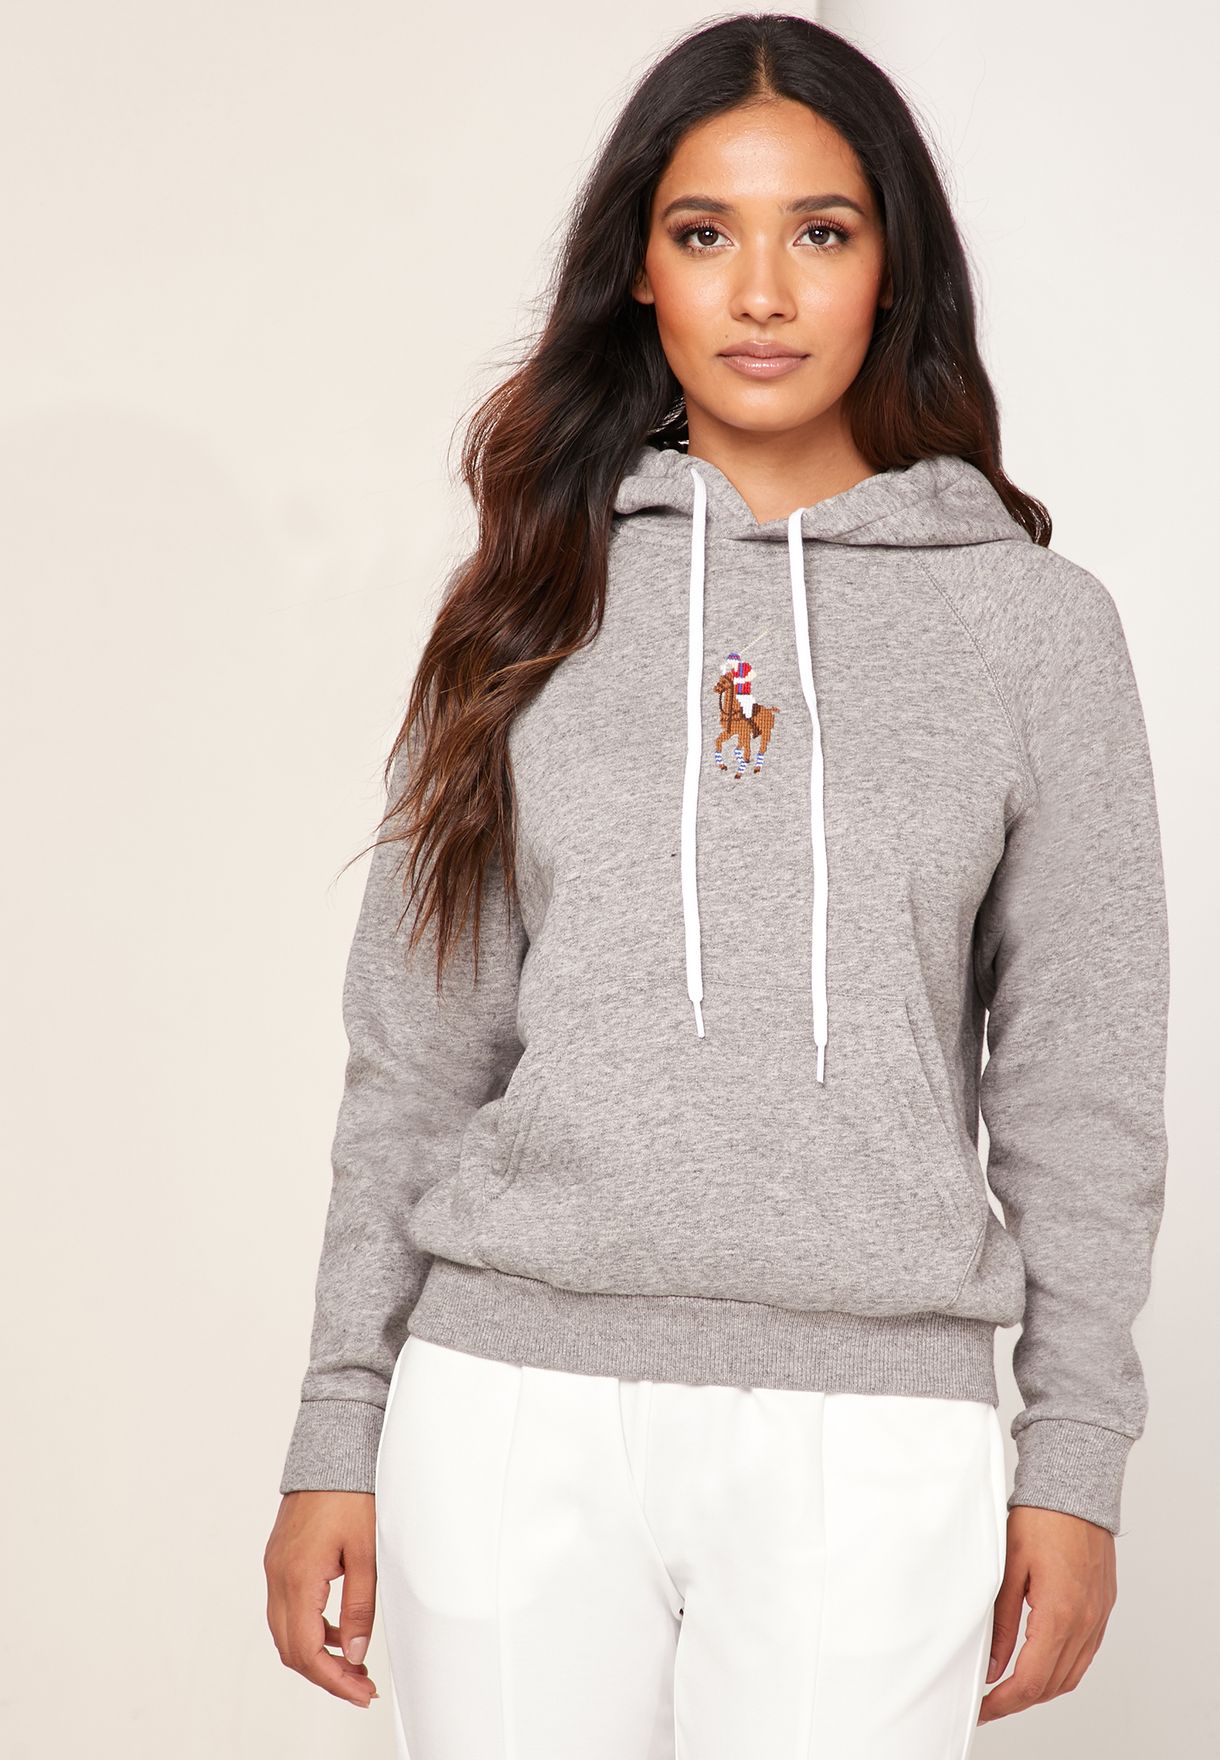 ralph lauren women's hooded sweatshirt